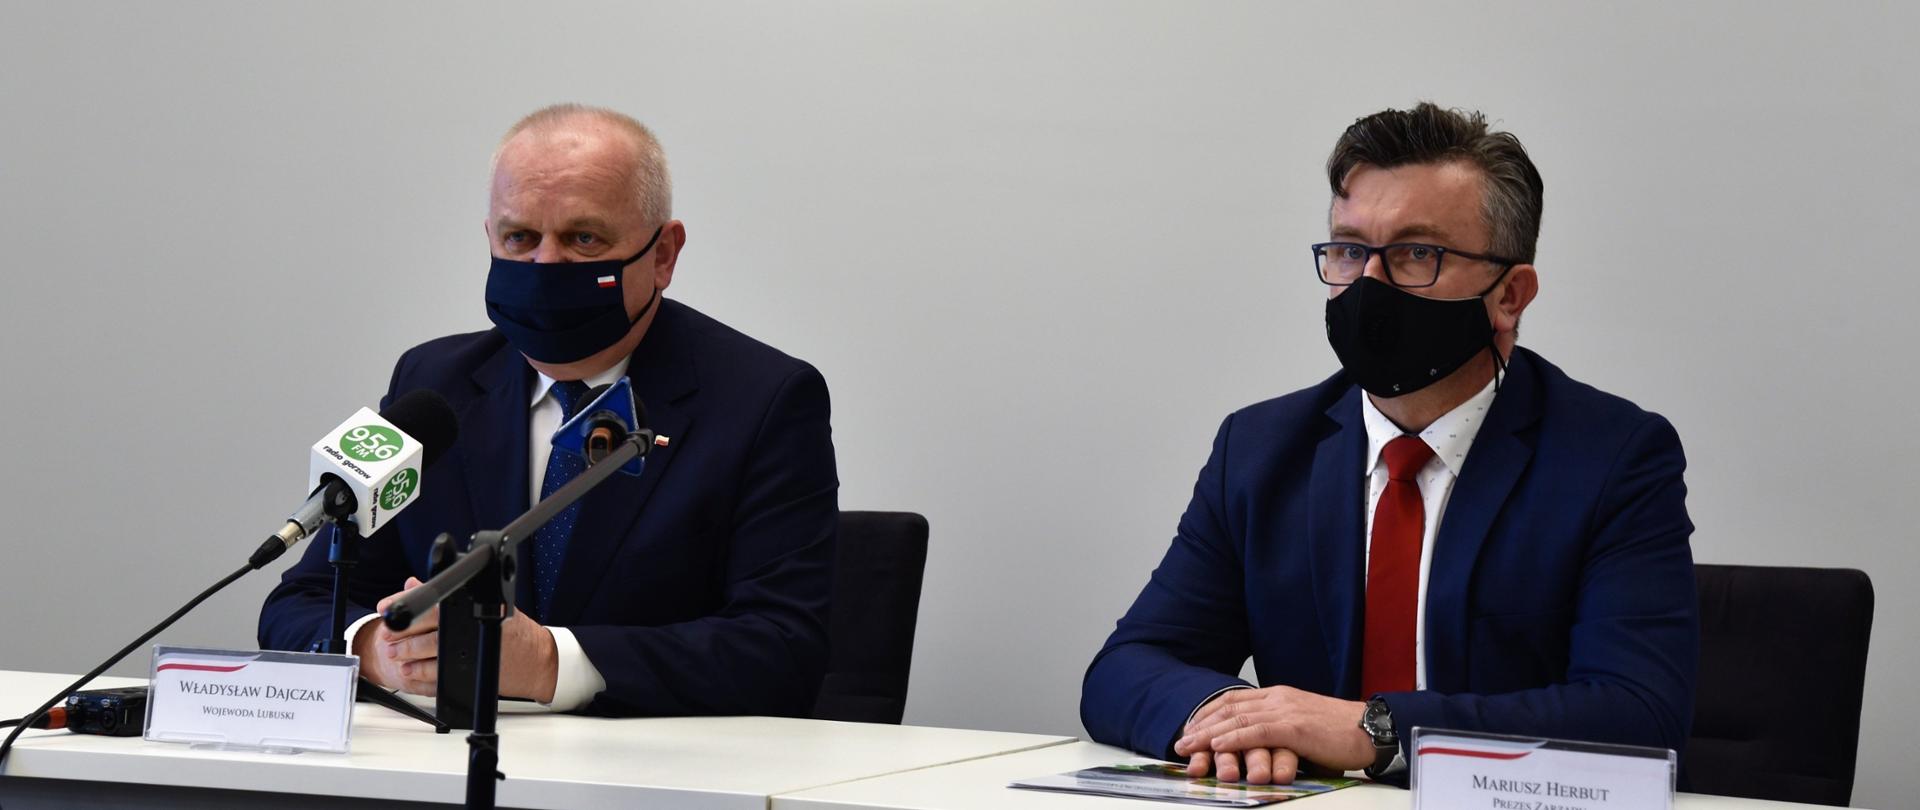 Wojewoda Lubuski Władysław Dajczak siedzi przy stole konferencyjnym z prezesem zarządu Wojewódzkiego Funduszu Ochrony Środowiska Mariuszem Herbutem. Przed nimi stoją mikrofony oraz wizytówki z nazwiskami. 